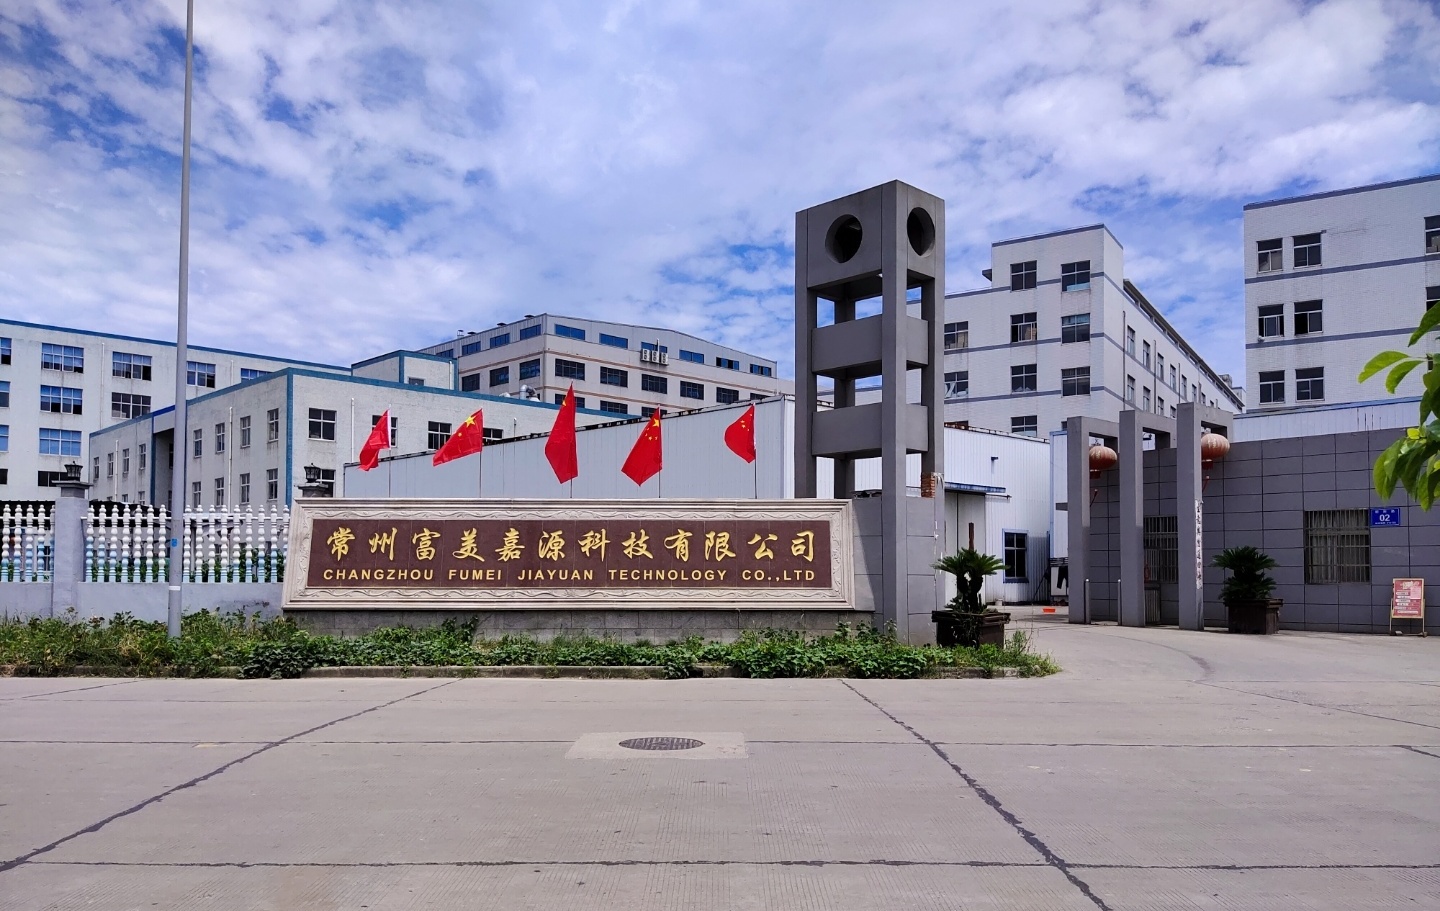 Changzhou Fumei Jiayuan Technology Co., Ltd. 